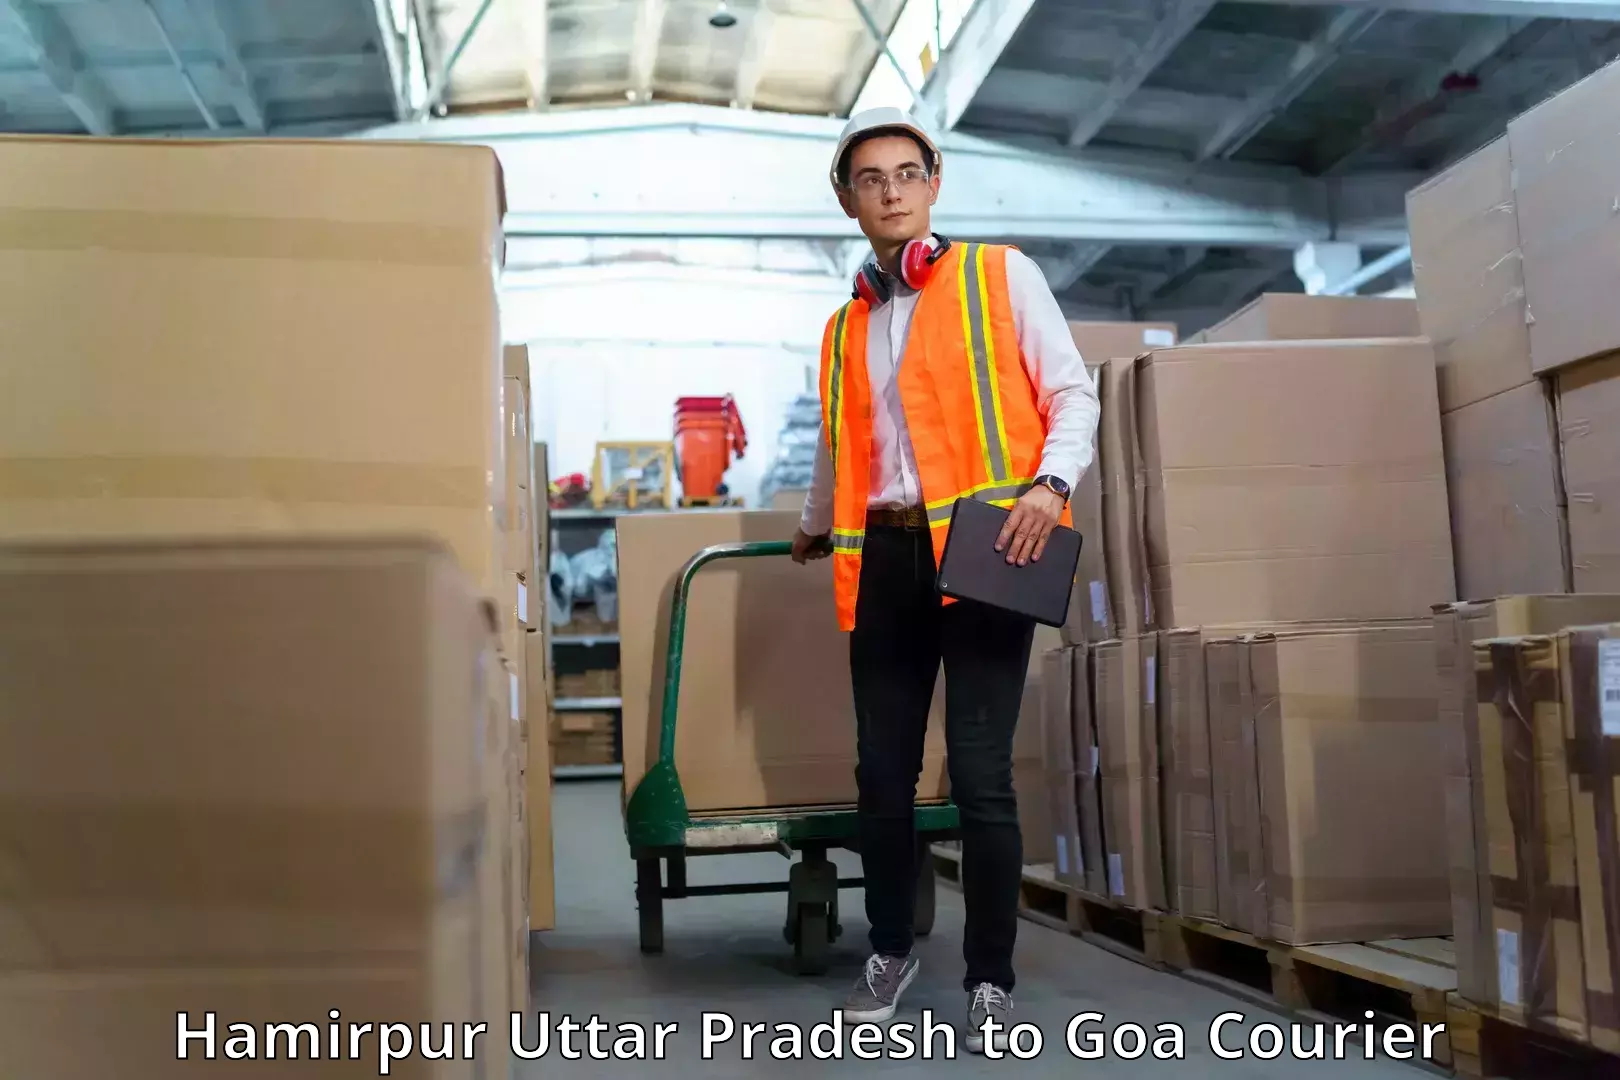 Customer-oriented courier services Hamirpur Uttar Pradesh to Bicholim